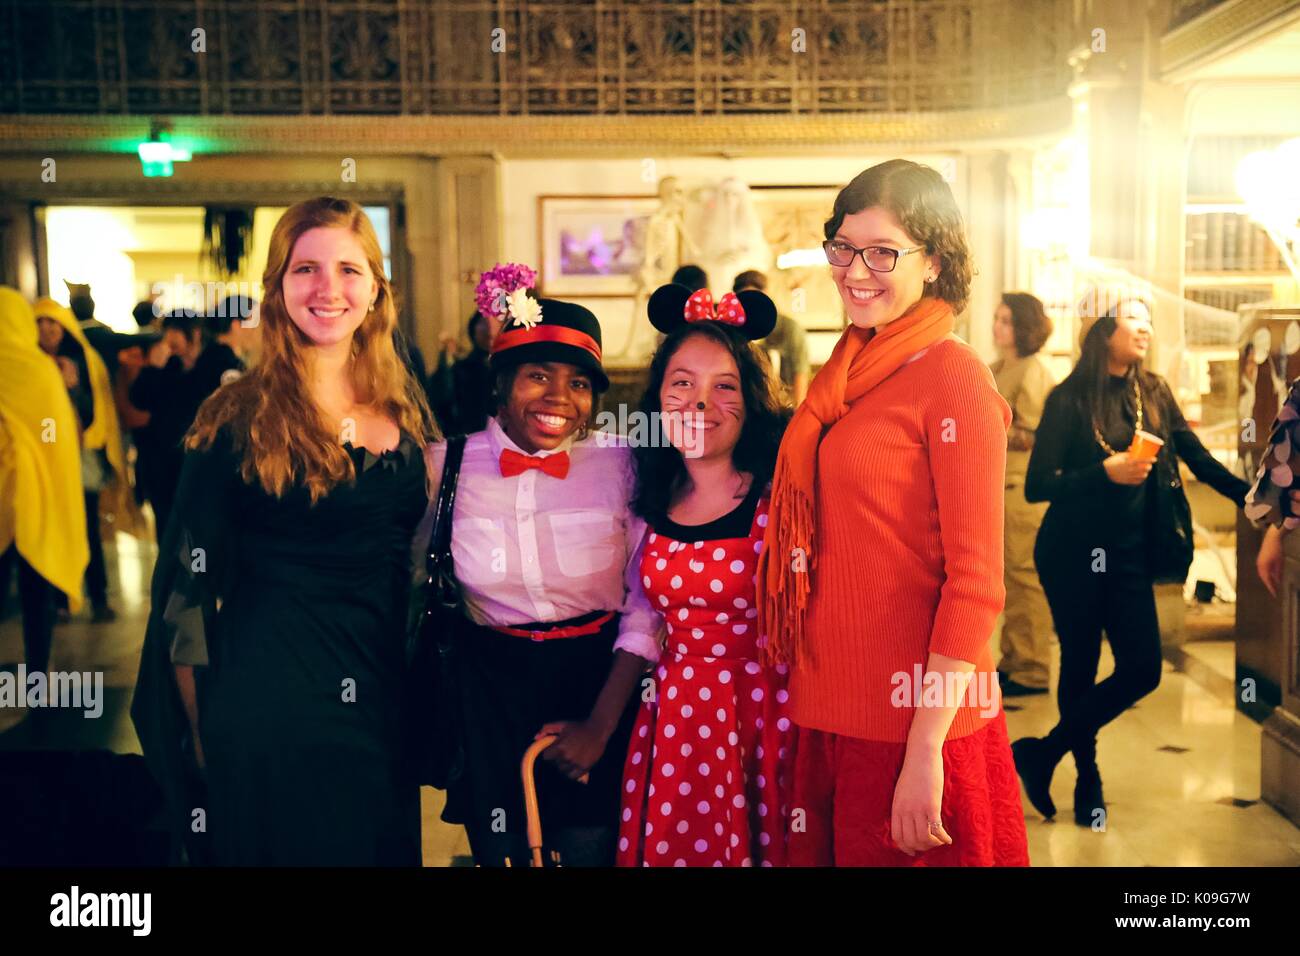 Femmina di quattro studenti del college sono in posa e sorridente, la ragazza sulla sinistra indossa un abito nero, la prossima ragazza è vestito come Mary Poppins e è in possesso di un ombrello, la ragazza accanto a lei è vestita come Minnie Mouse e la ragazza più a destra è vestito da Wilma da Scooby Doo, 2015. La cortesia Eric Chen. Foto Stock